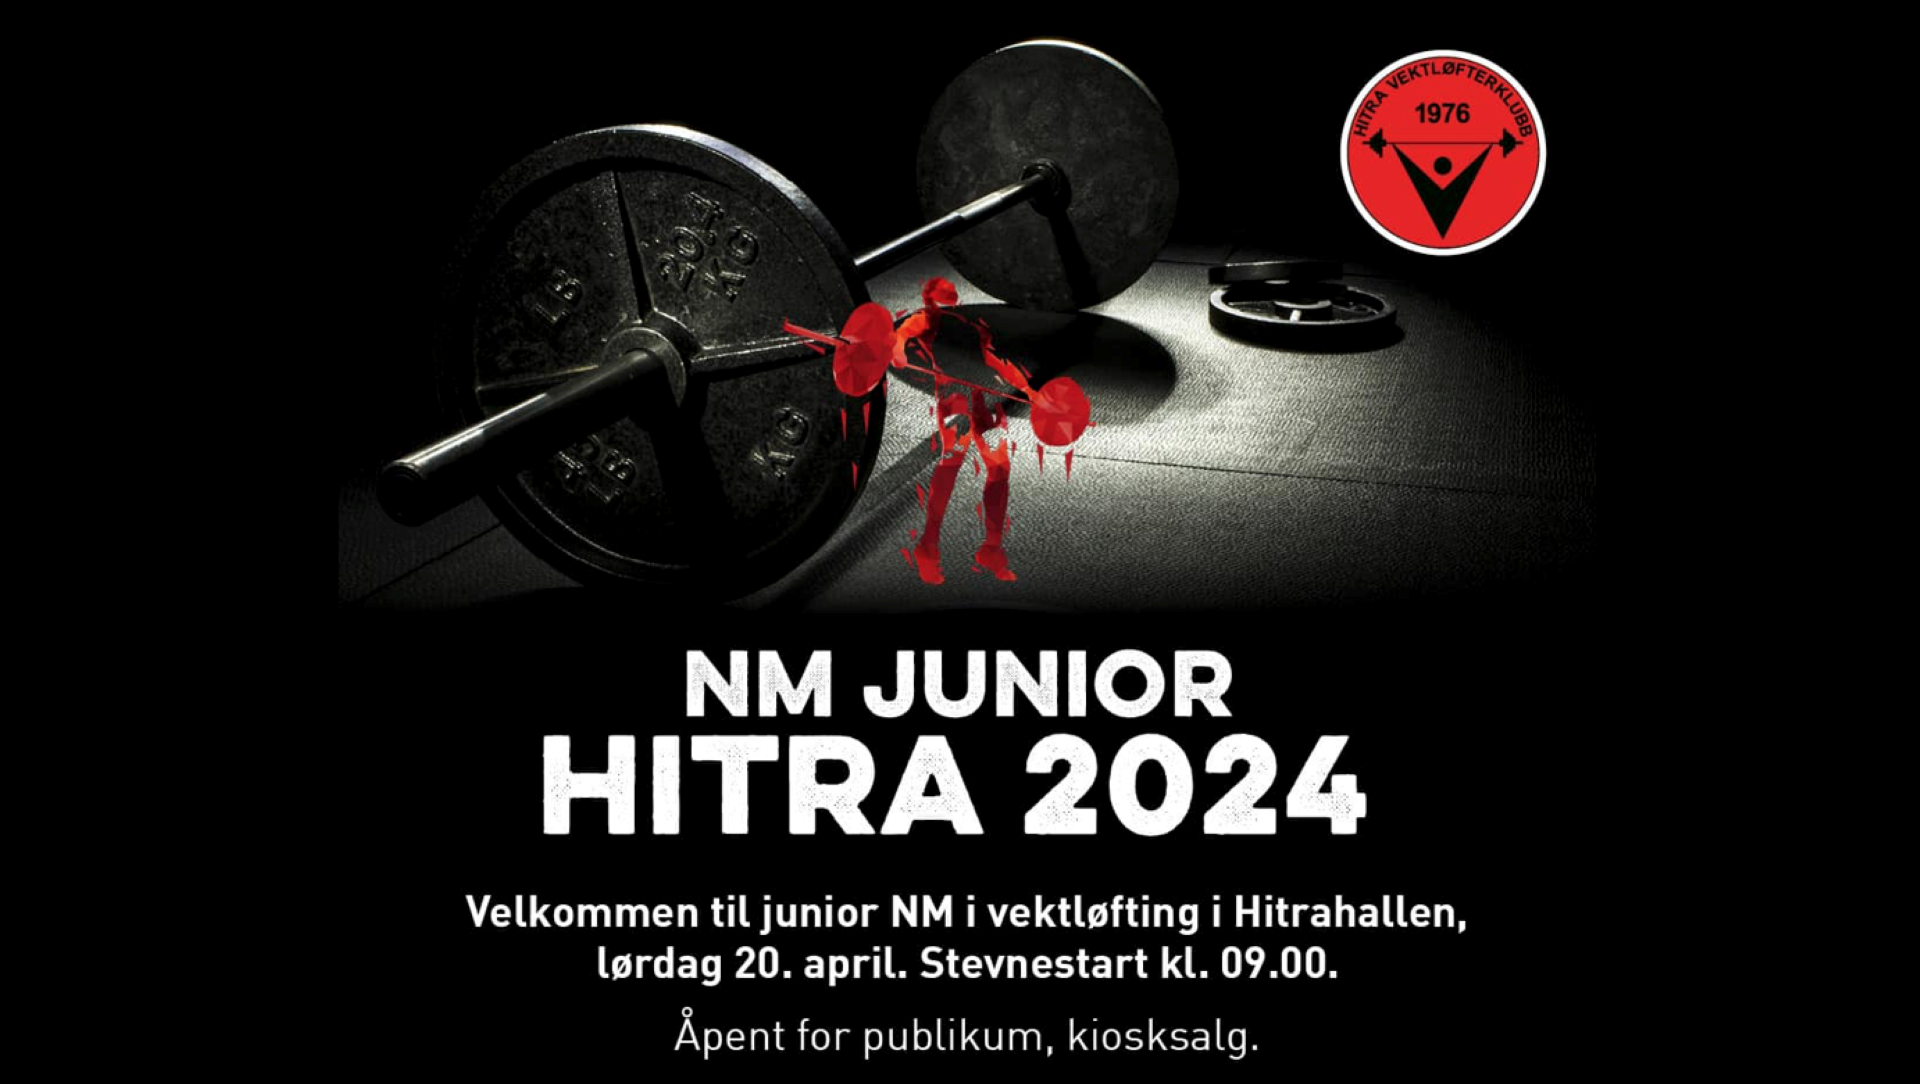 Hitra VK, Amedia og NVF klare for NM junior 2024